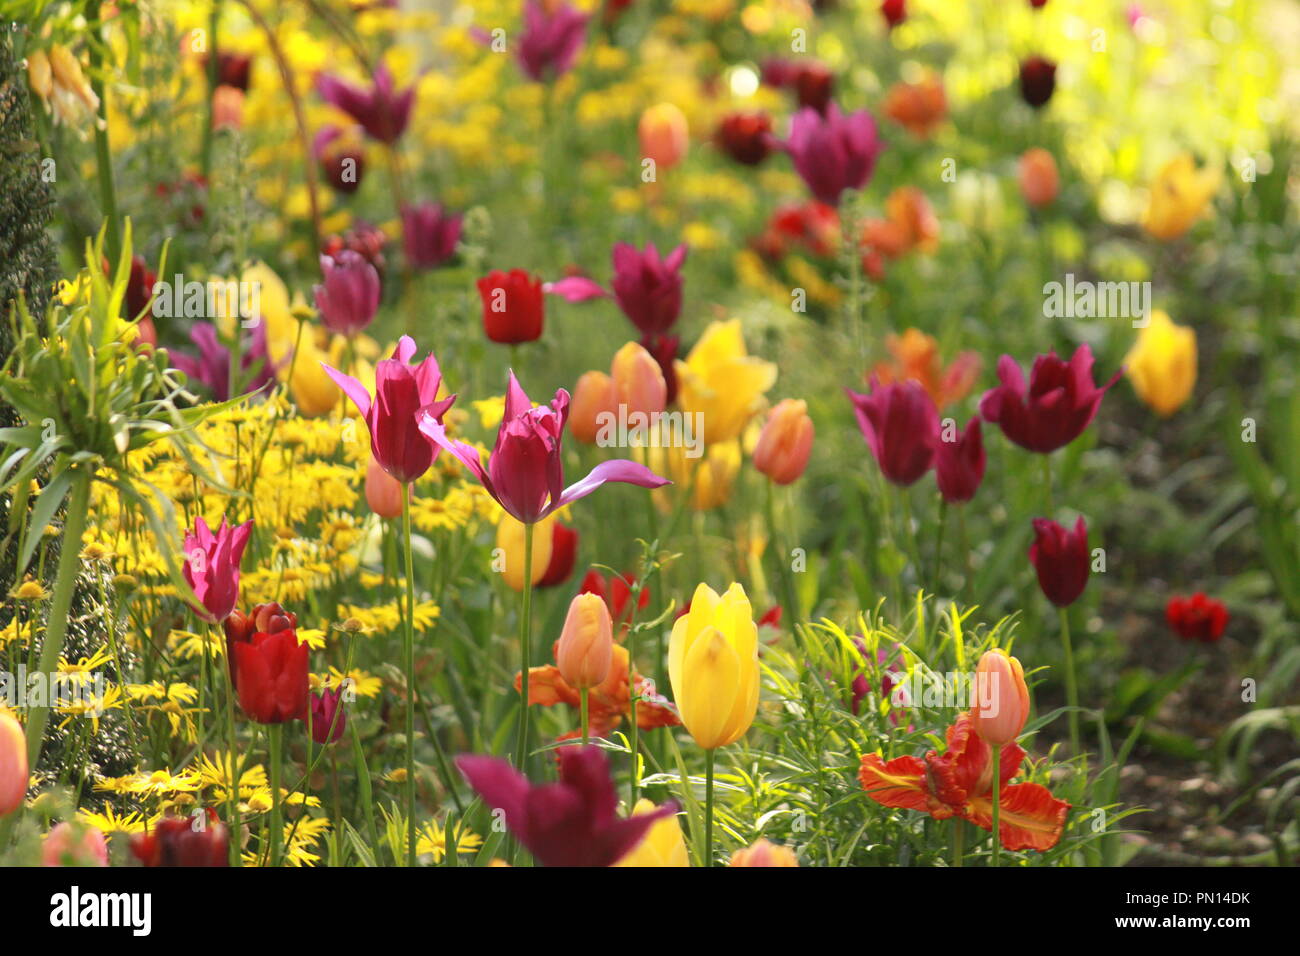 Letto di fiori di tulipani colorati in una giornata di sole in un giardino. Tulipa. Foto Stock